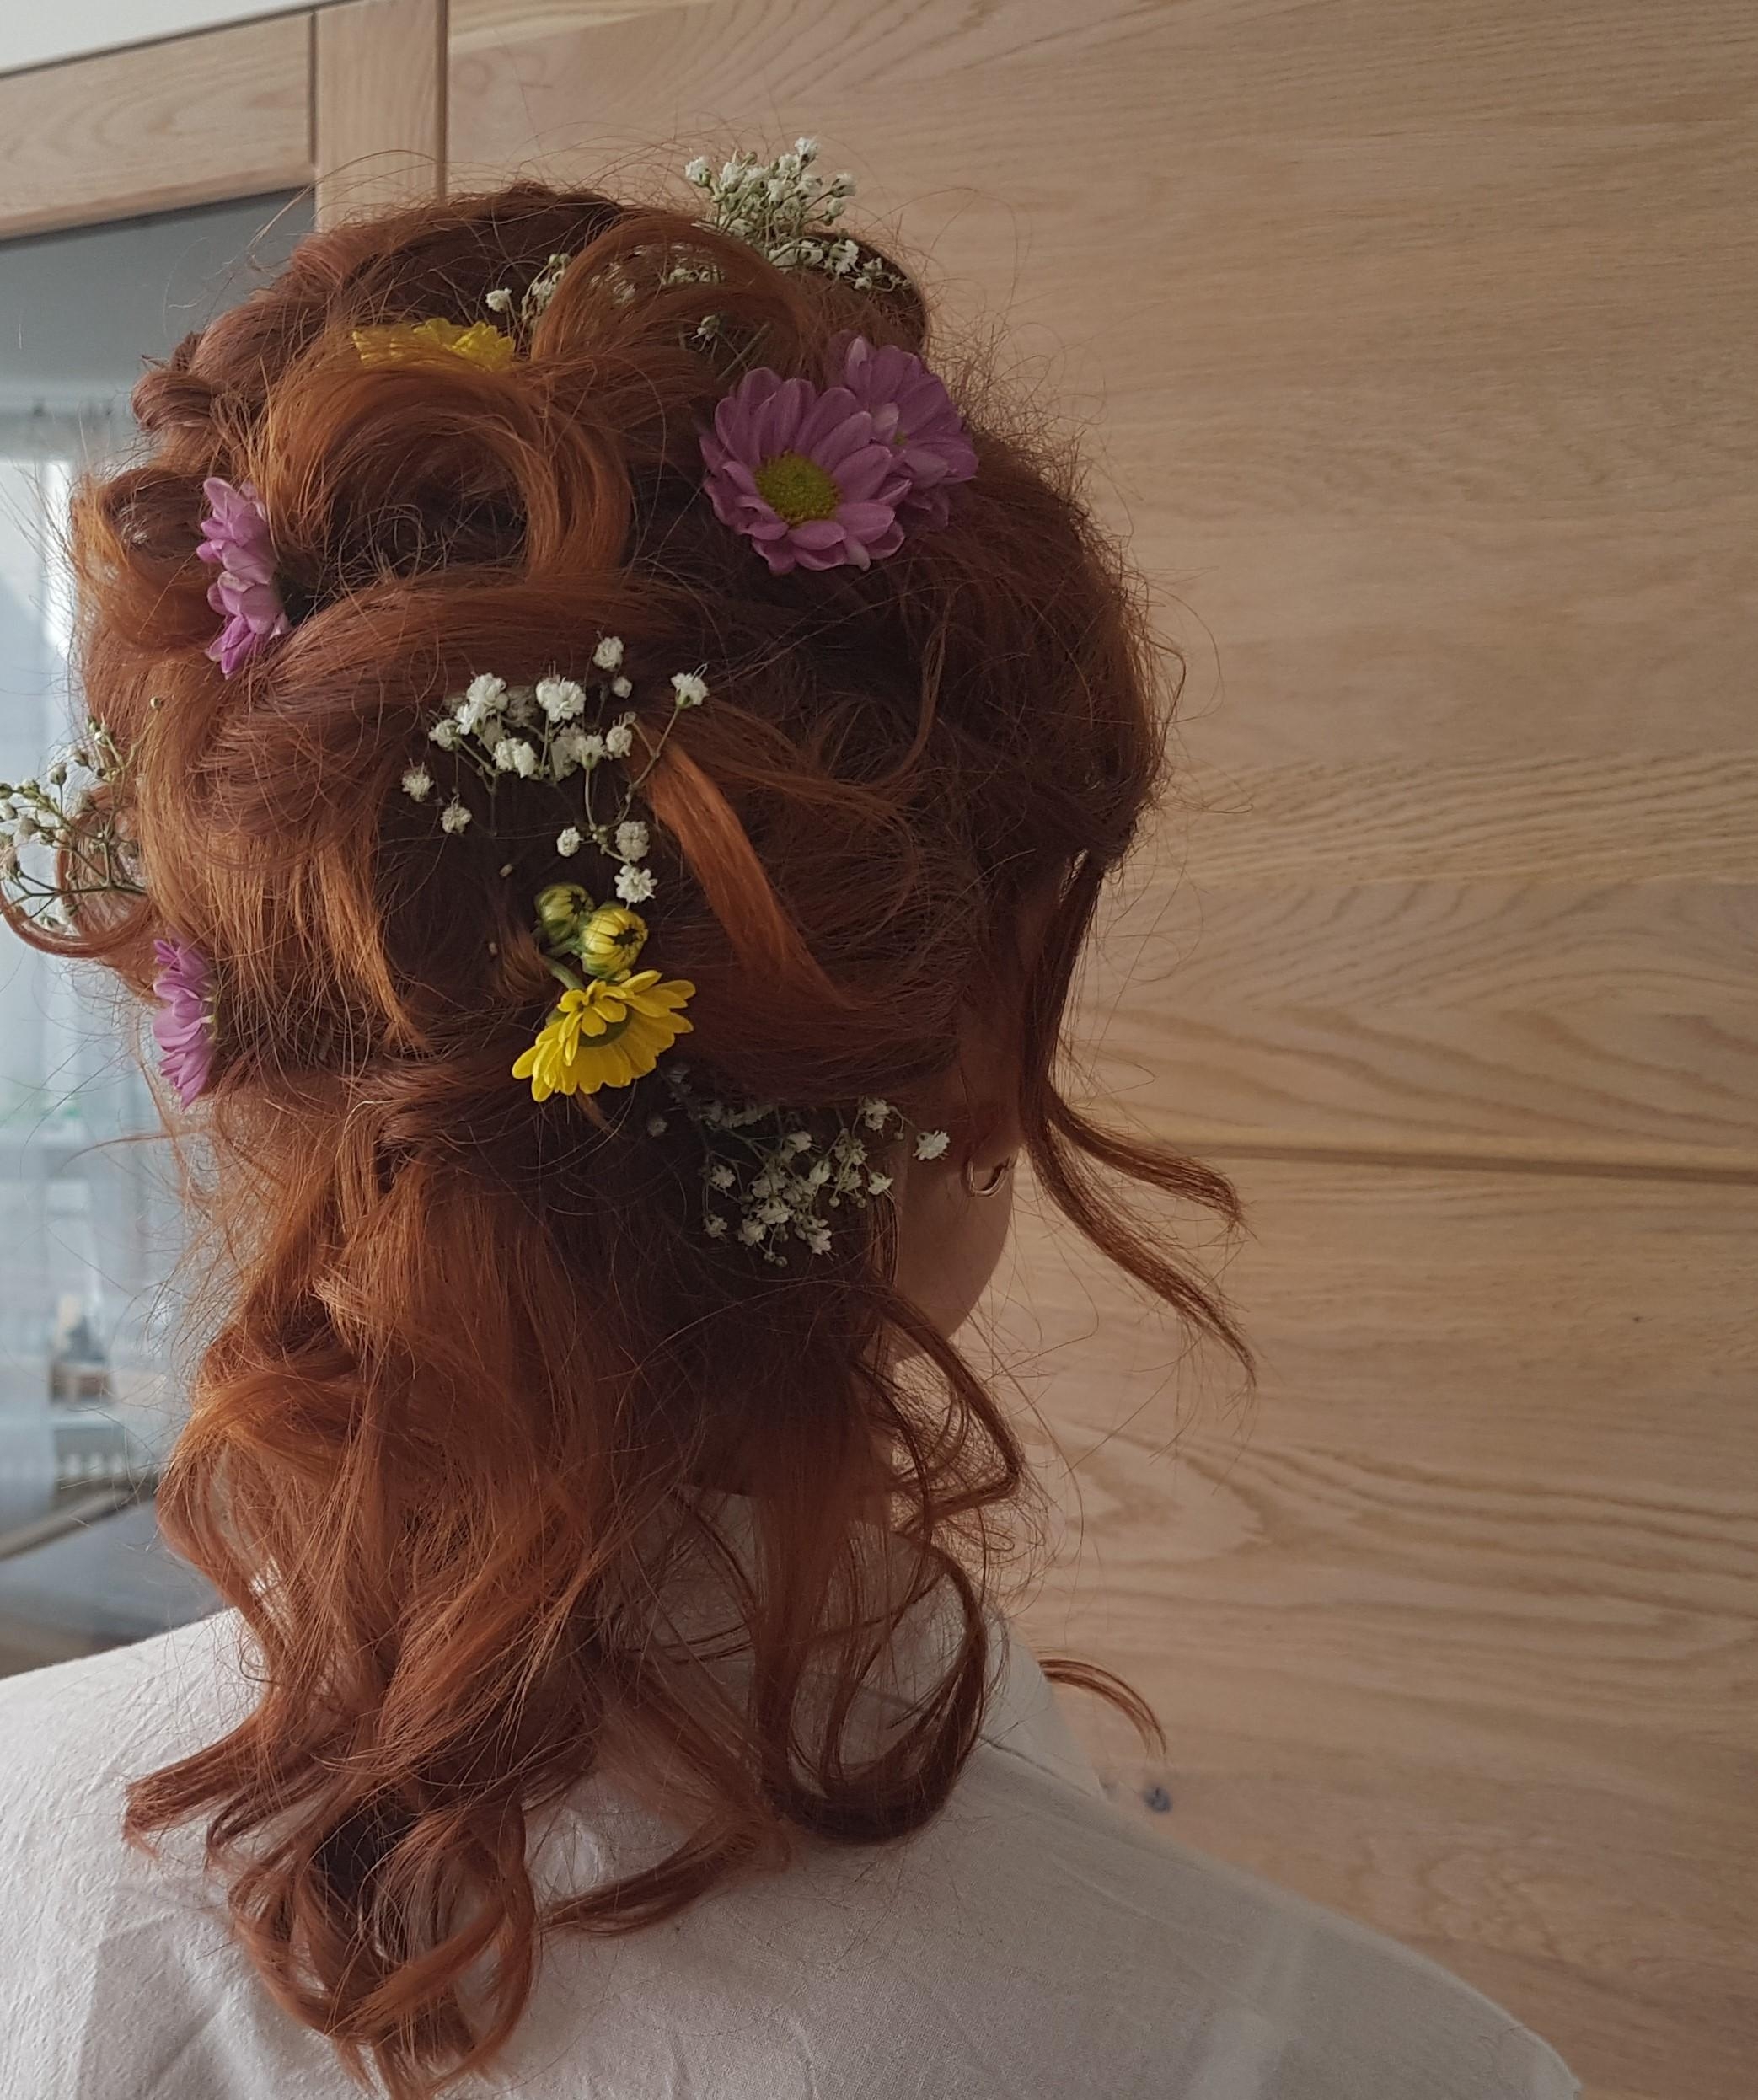 Diese Frisur trug ich zu einer Hochzeit! Die Blümchen im Haar sind immer im Trend :-) #hairtyle#beautychallenge